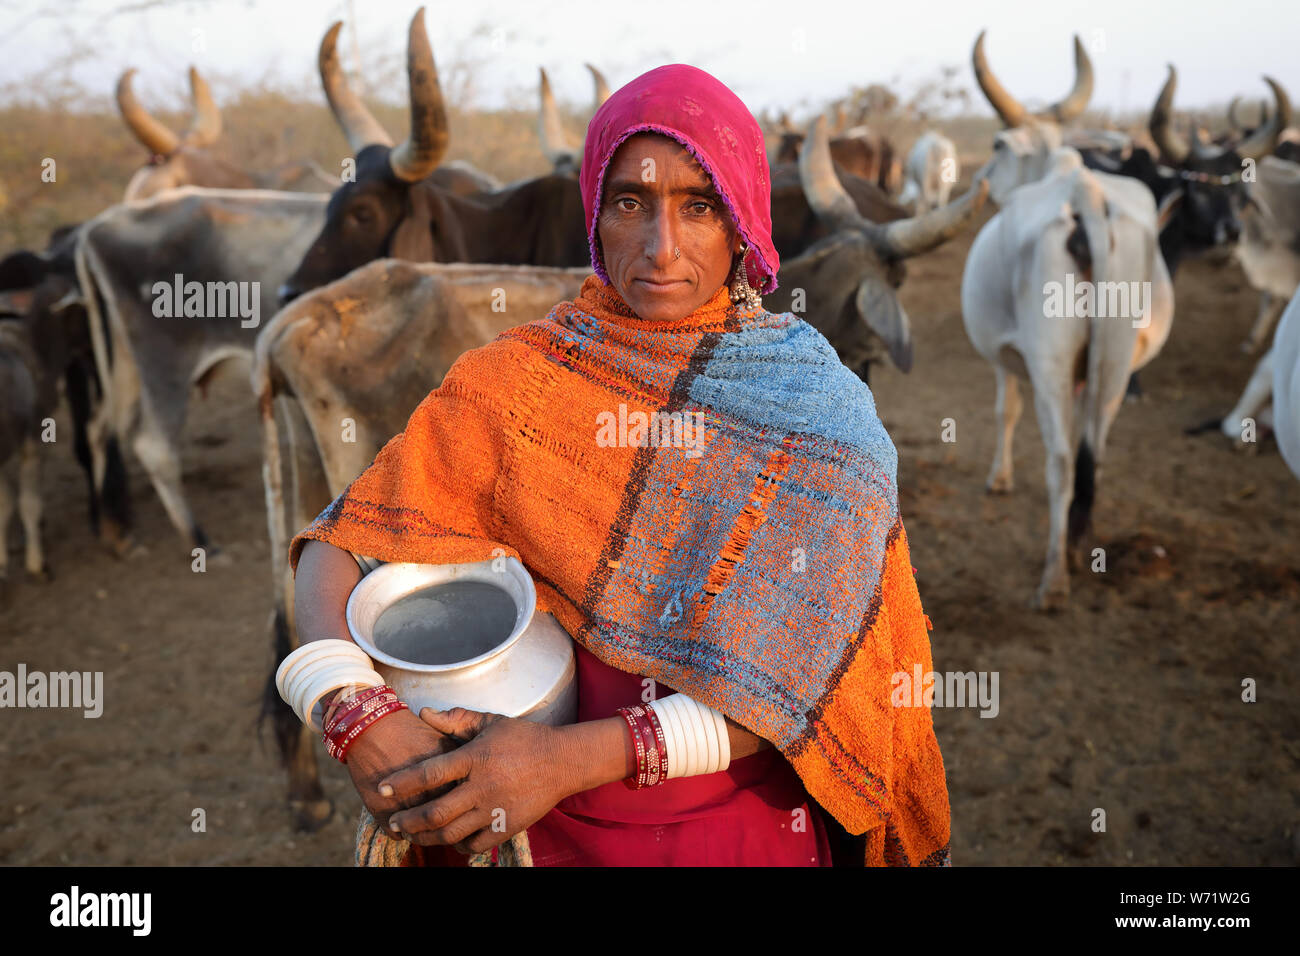 Rabari Frau in einem ländlichen Dorf im Bezirk von Kutch, Gujarat. Die Region Kutch ist bekannt für seine Stammesleben und traditionelle Kultur bekannt. Stockfoto